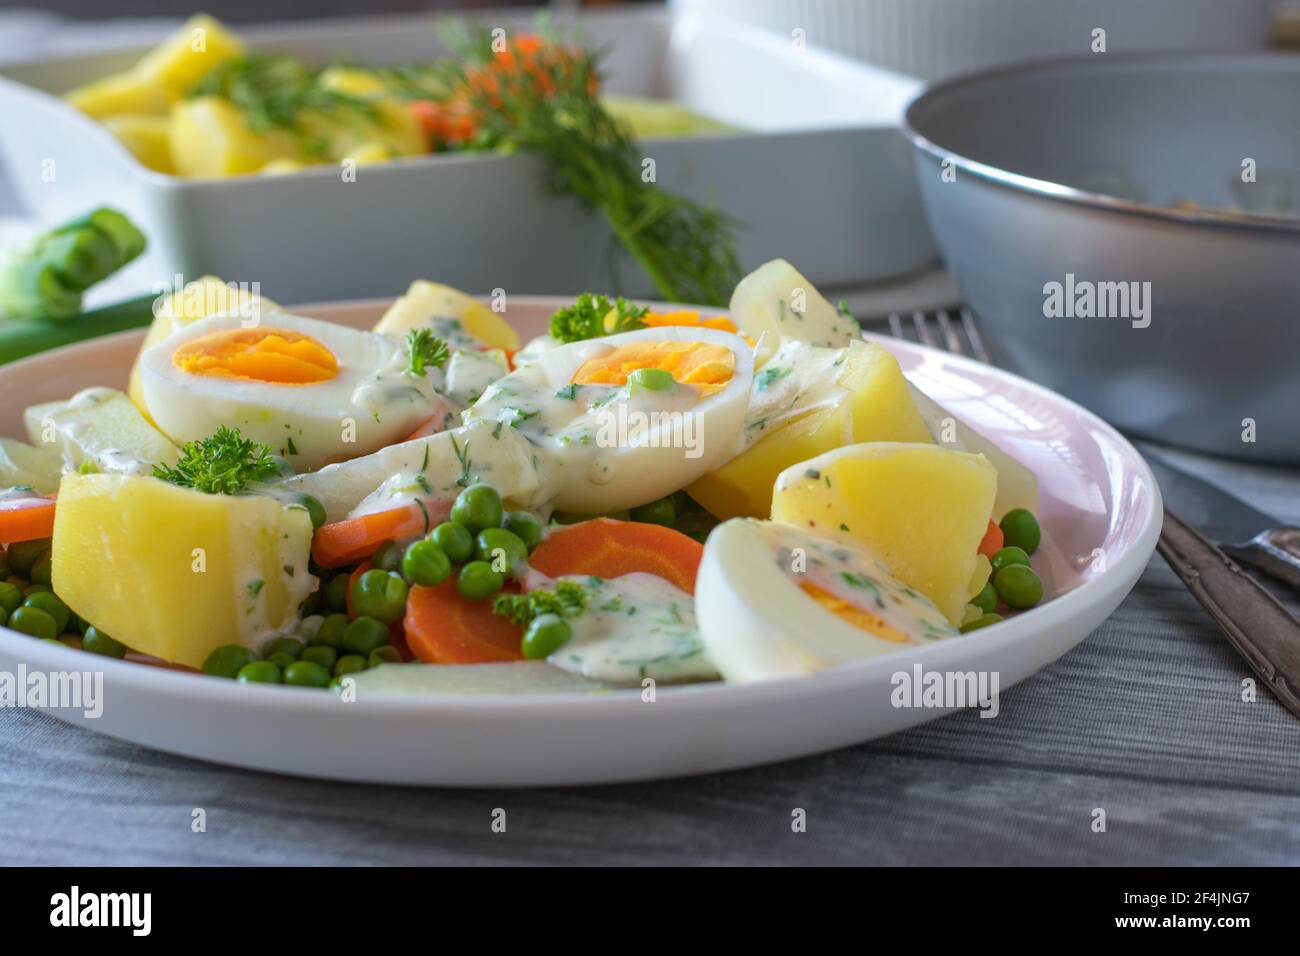 Gekochte Eier mit Gemüse, Kartoffeln und Sauce auf einem Teller Stockfoto